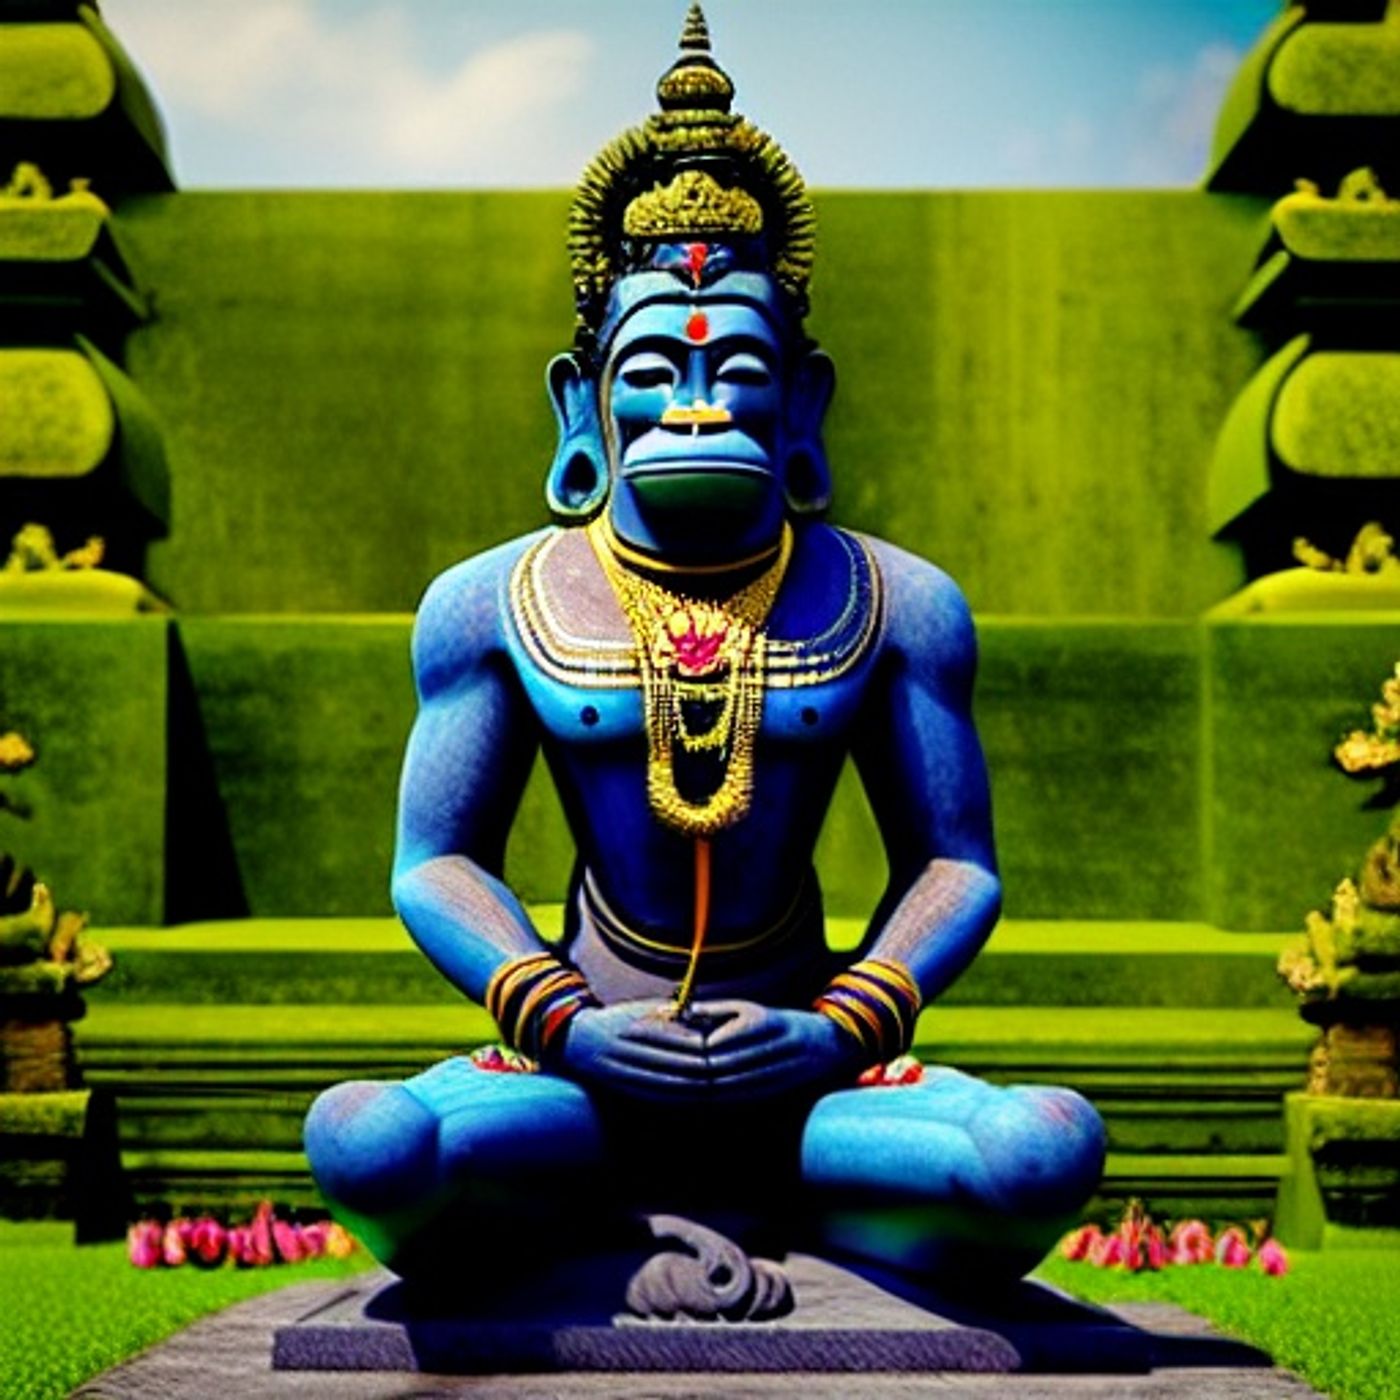 Shri Anjaneya Bhujang Prayat Stotra - Praying to Lord Hanuman